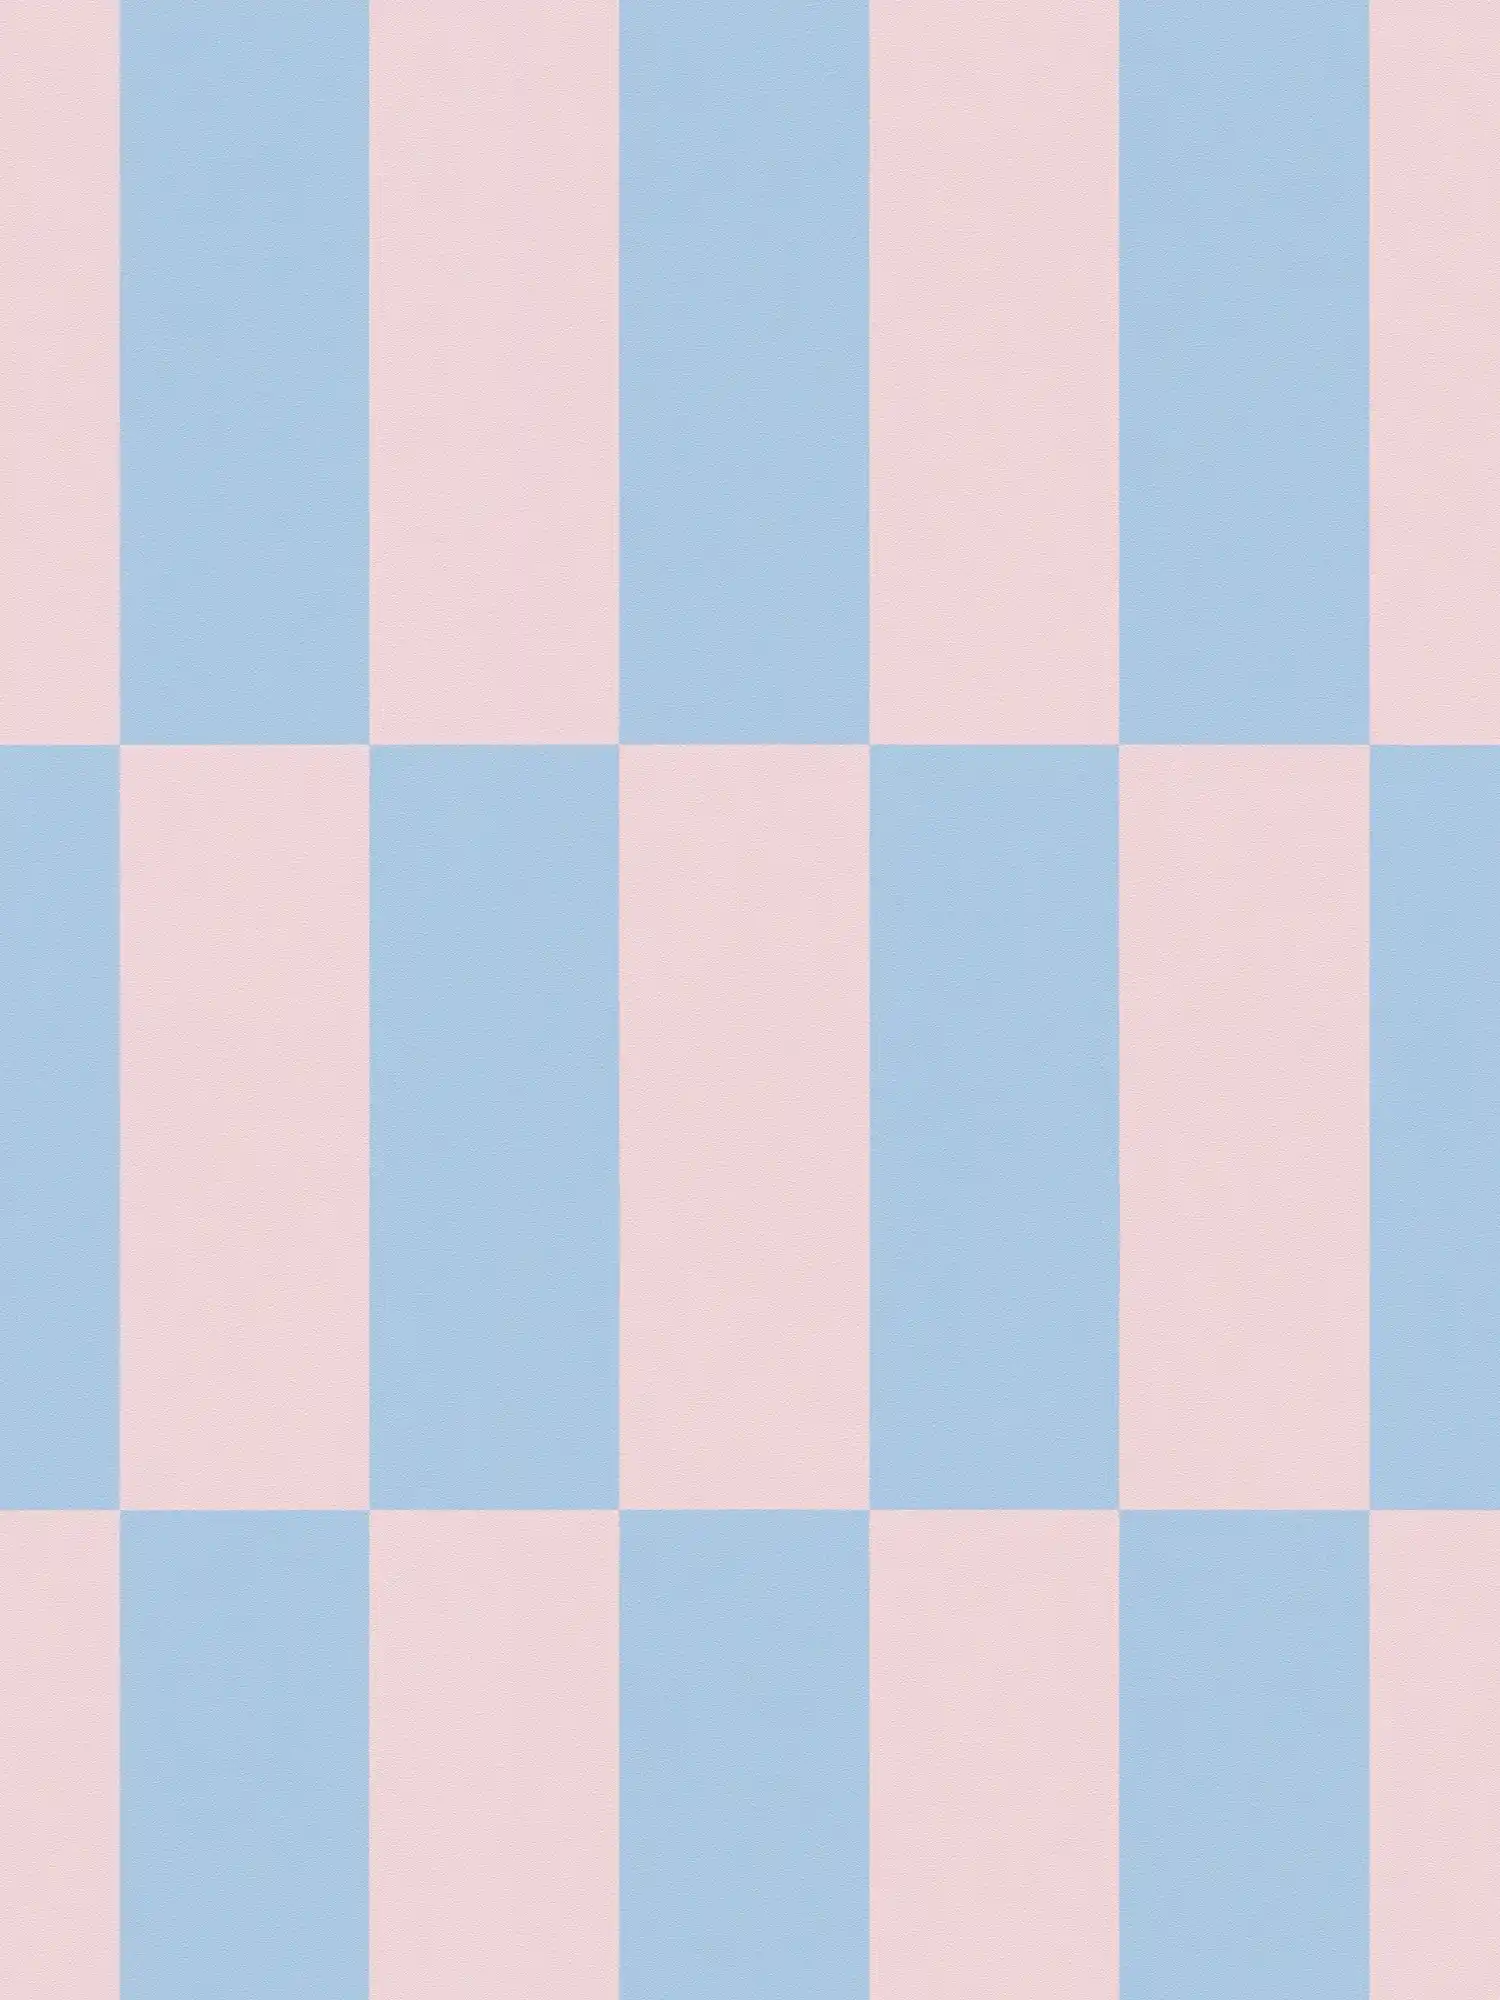         Carta da parati in tessuto non tessuto a quadri grafici bicolore - blu, rosa
    